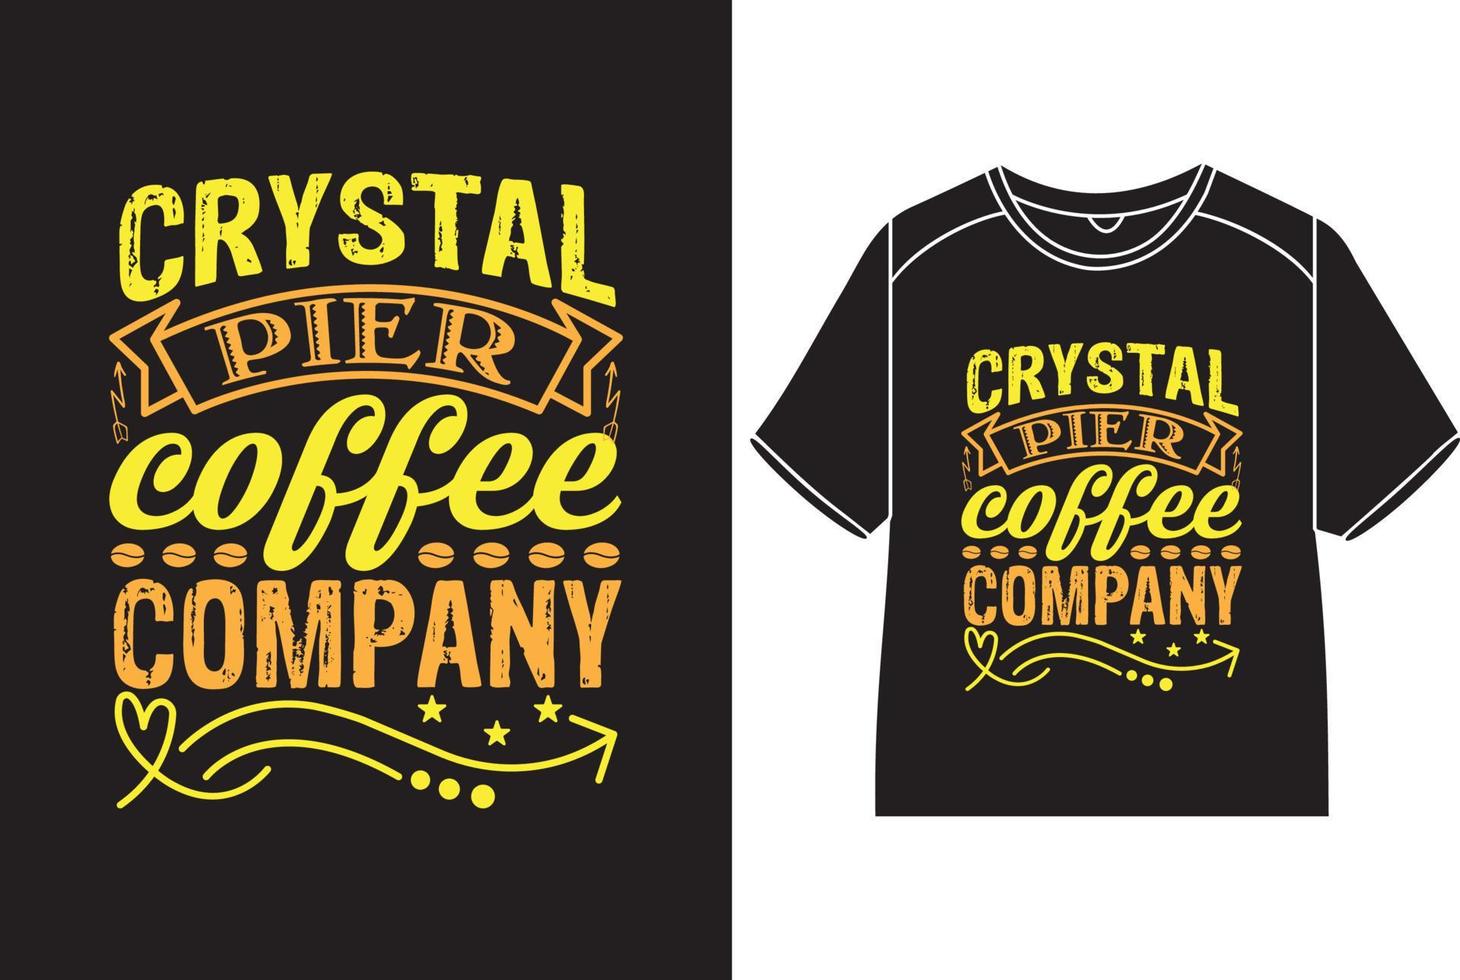 kristall pir kaffe företag t-shirt design vektor